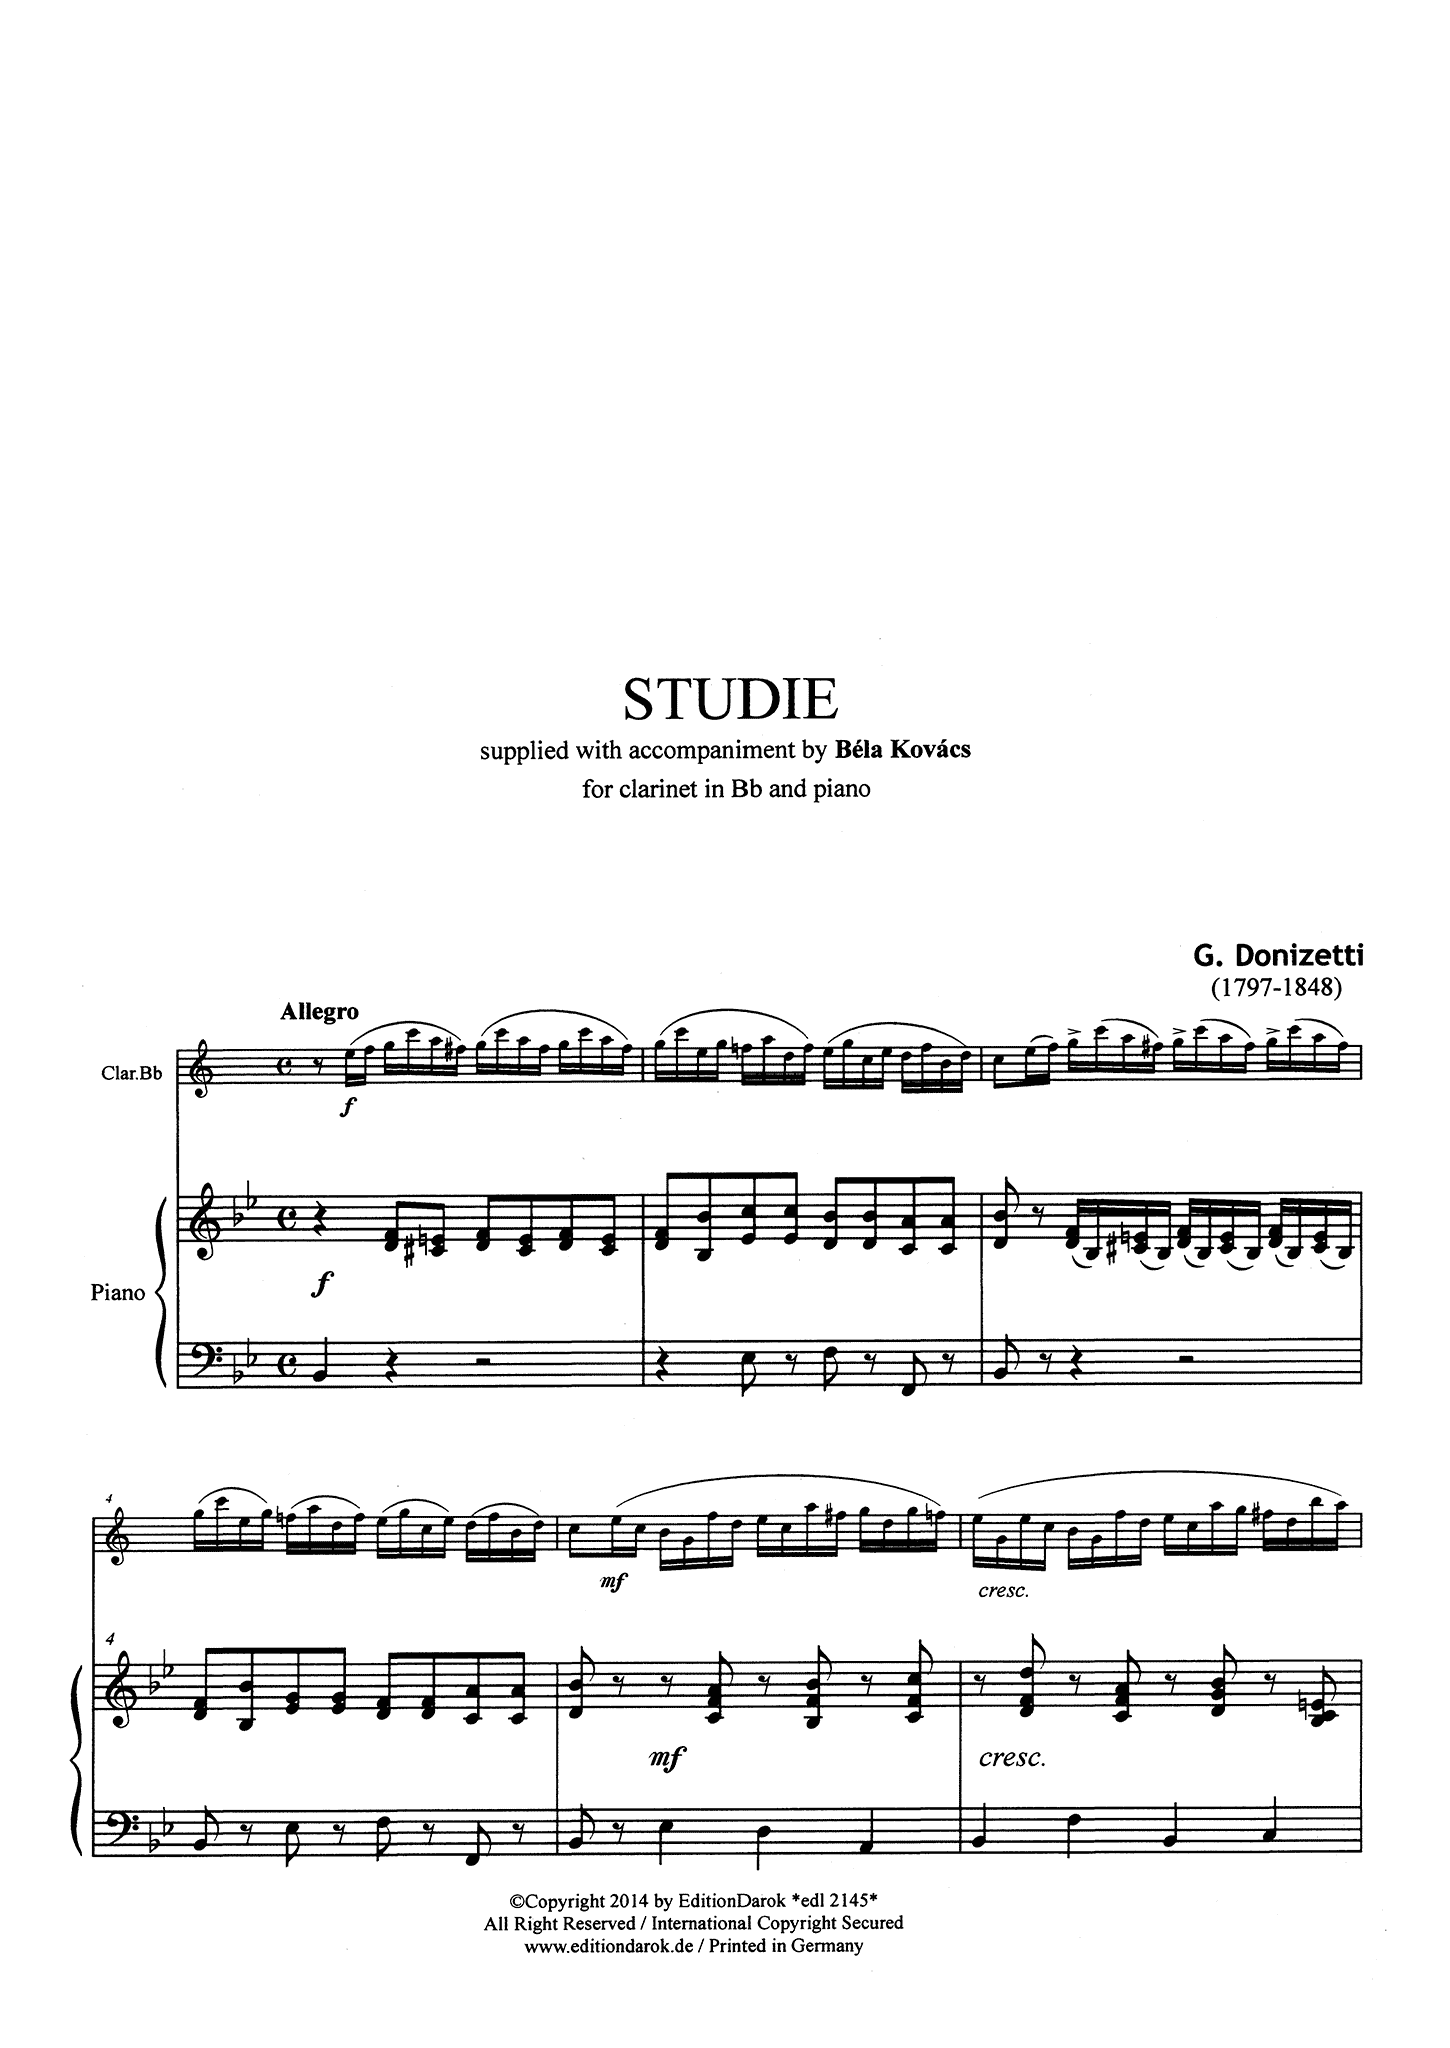 Donizetti Study No. 1 with piano accompaniment Score